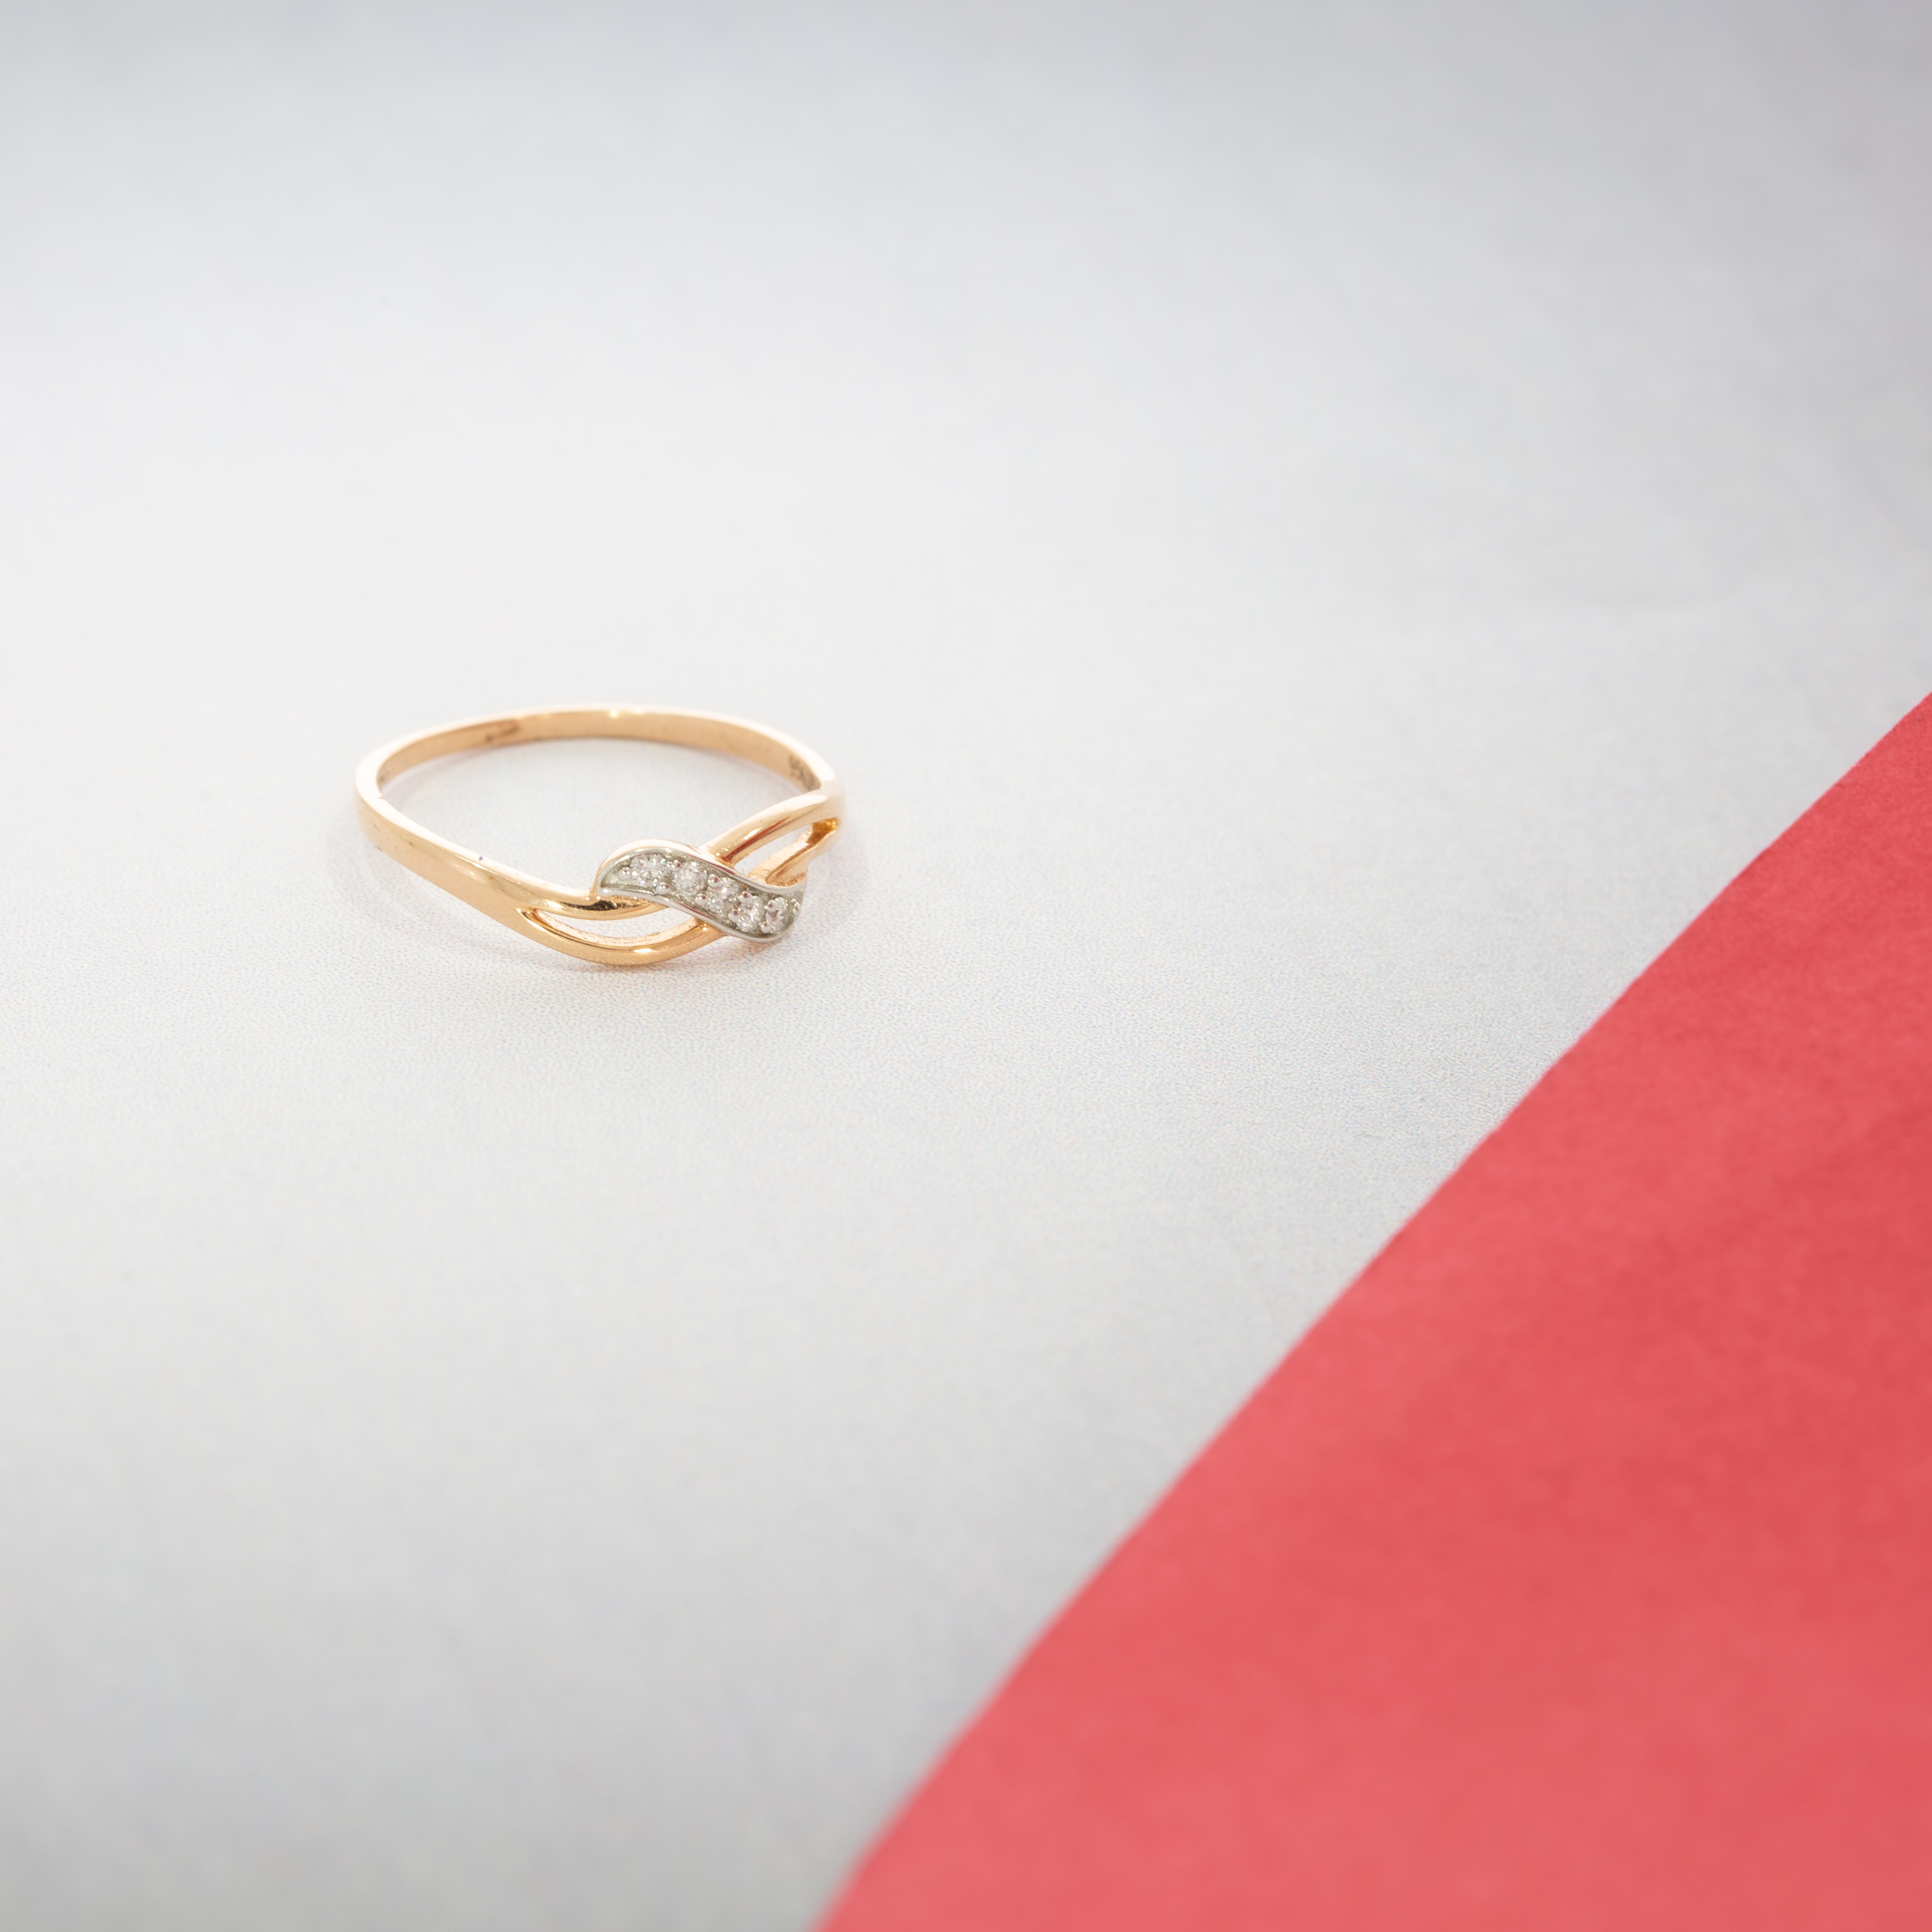 Enchanting 14ct Rose Gold Diamond Ring